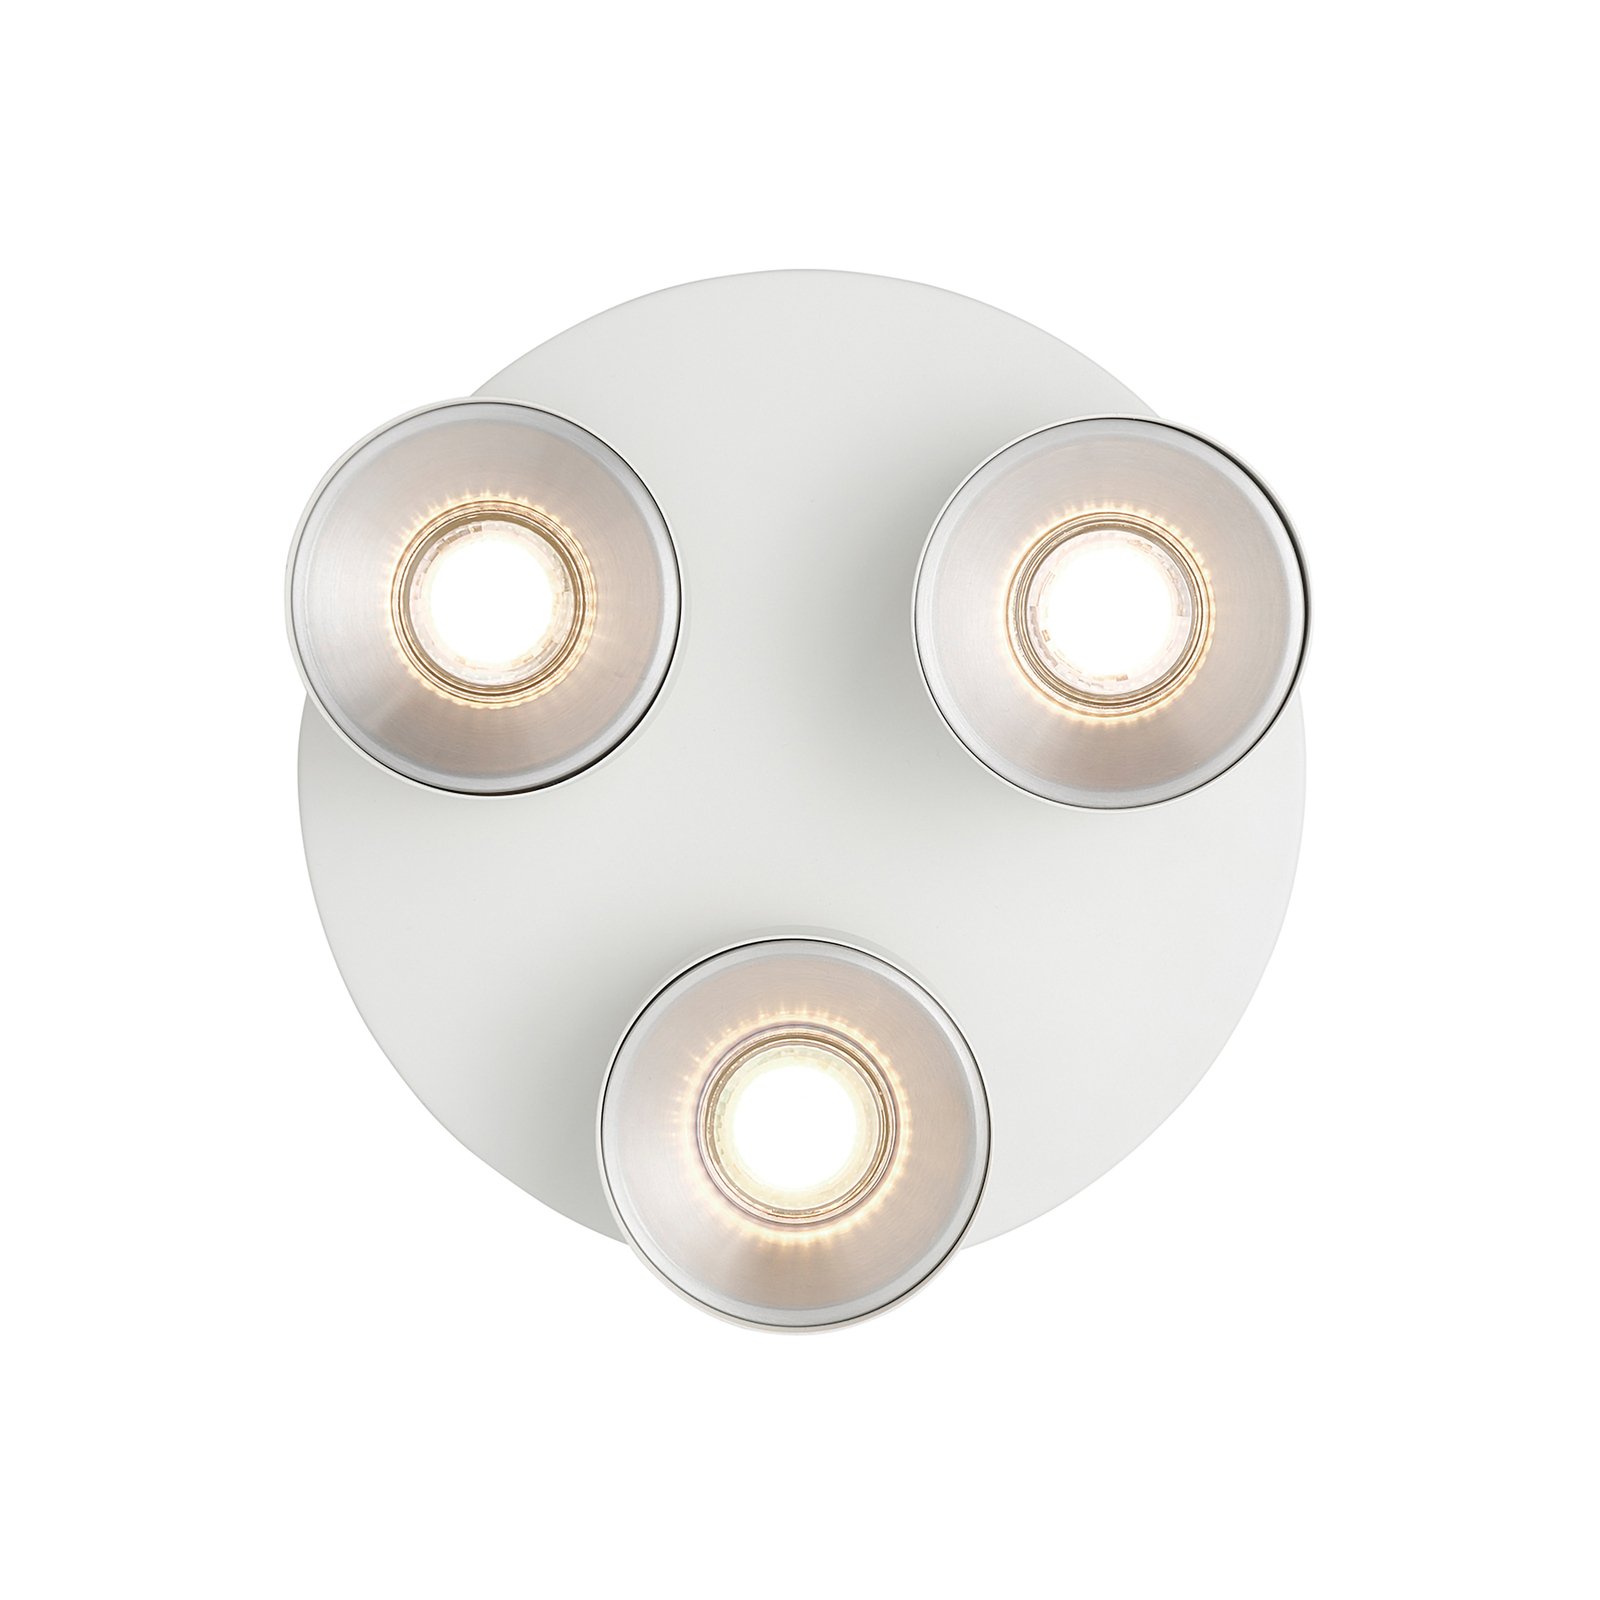 Svietidlo podhľadové, GU10, s tromi žiarovkami, okrúhle, kovové, biele